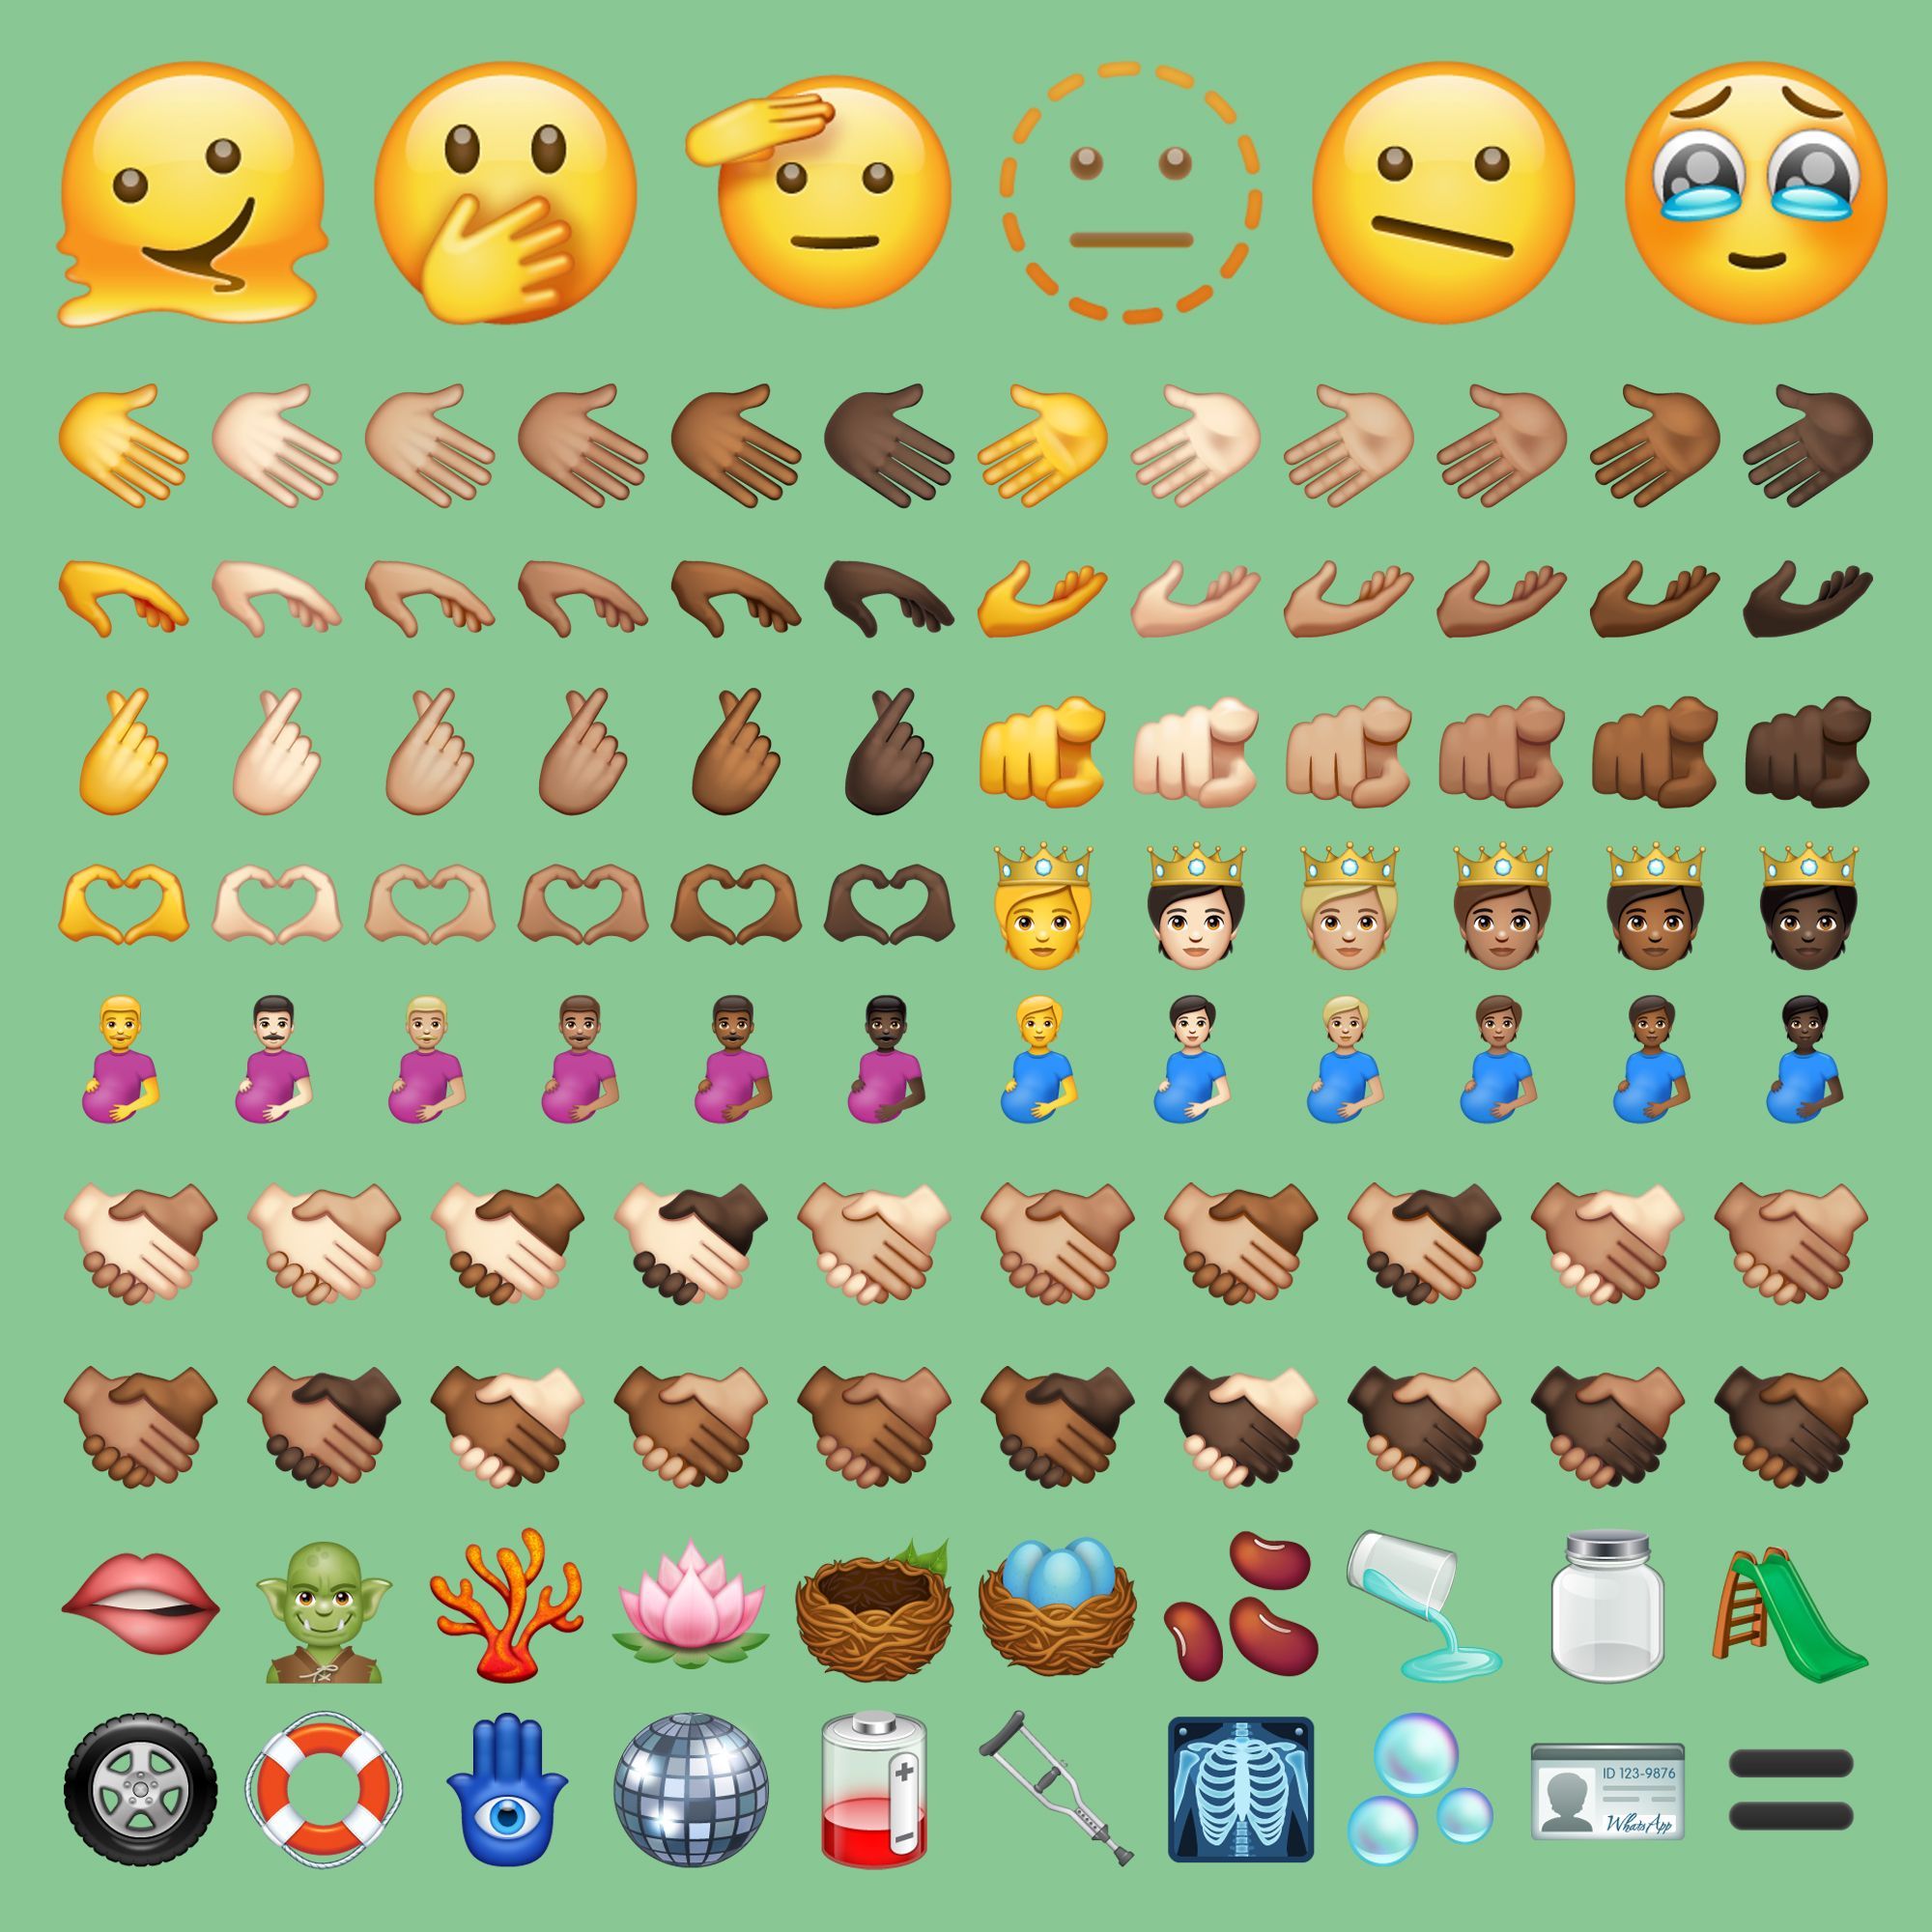 WhatsApp cobrará por los emojis